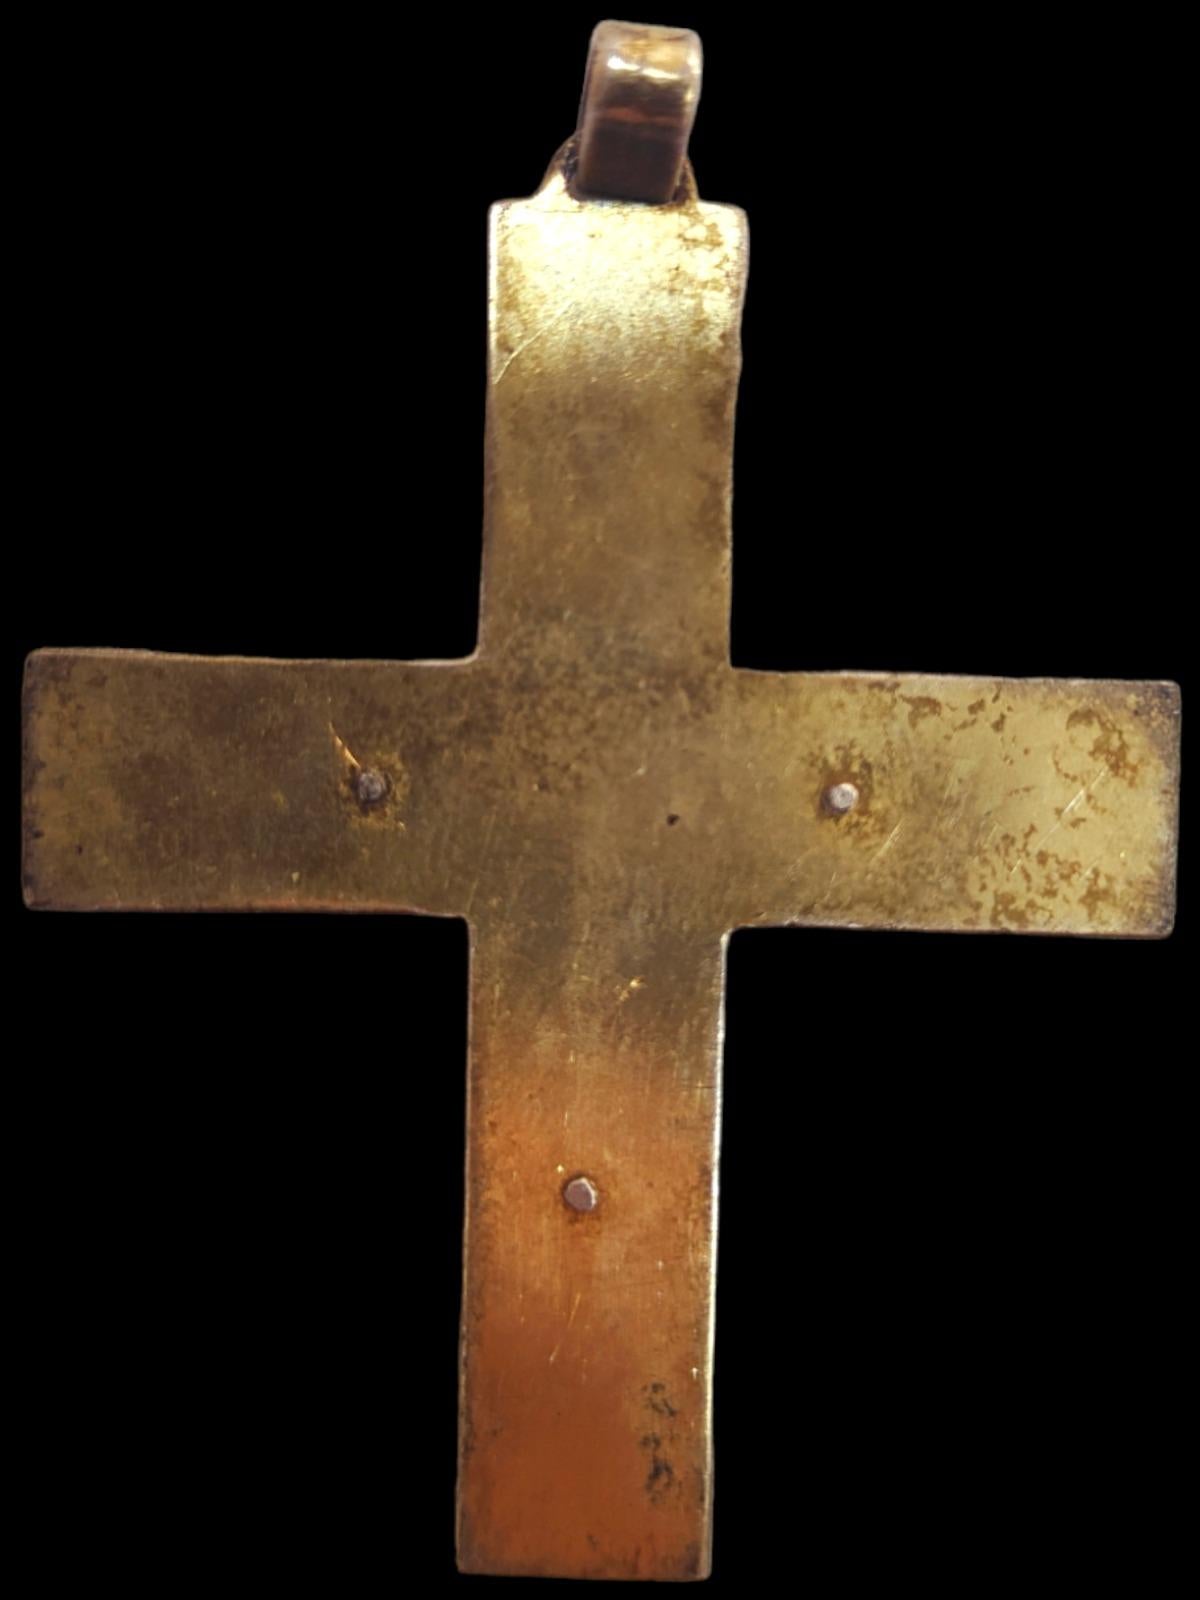 Croix du 19ème siècle
Belle croix du xixe siècle en bois d'olivier. Mesures : 23 x 12 cm. En bon état.